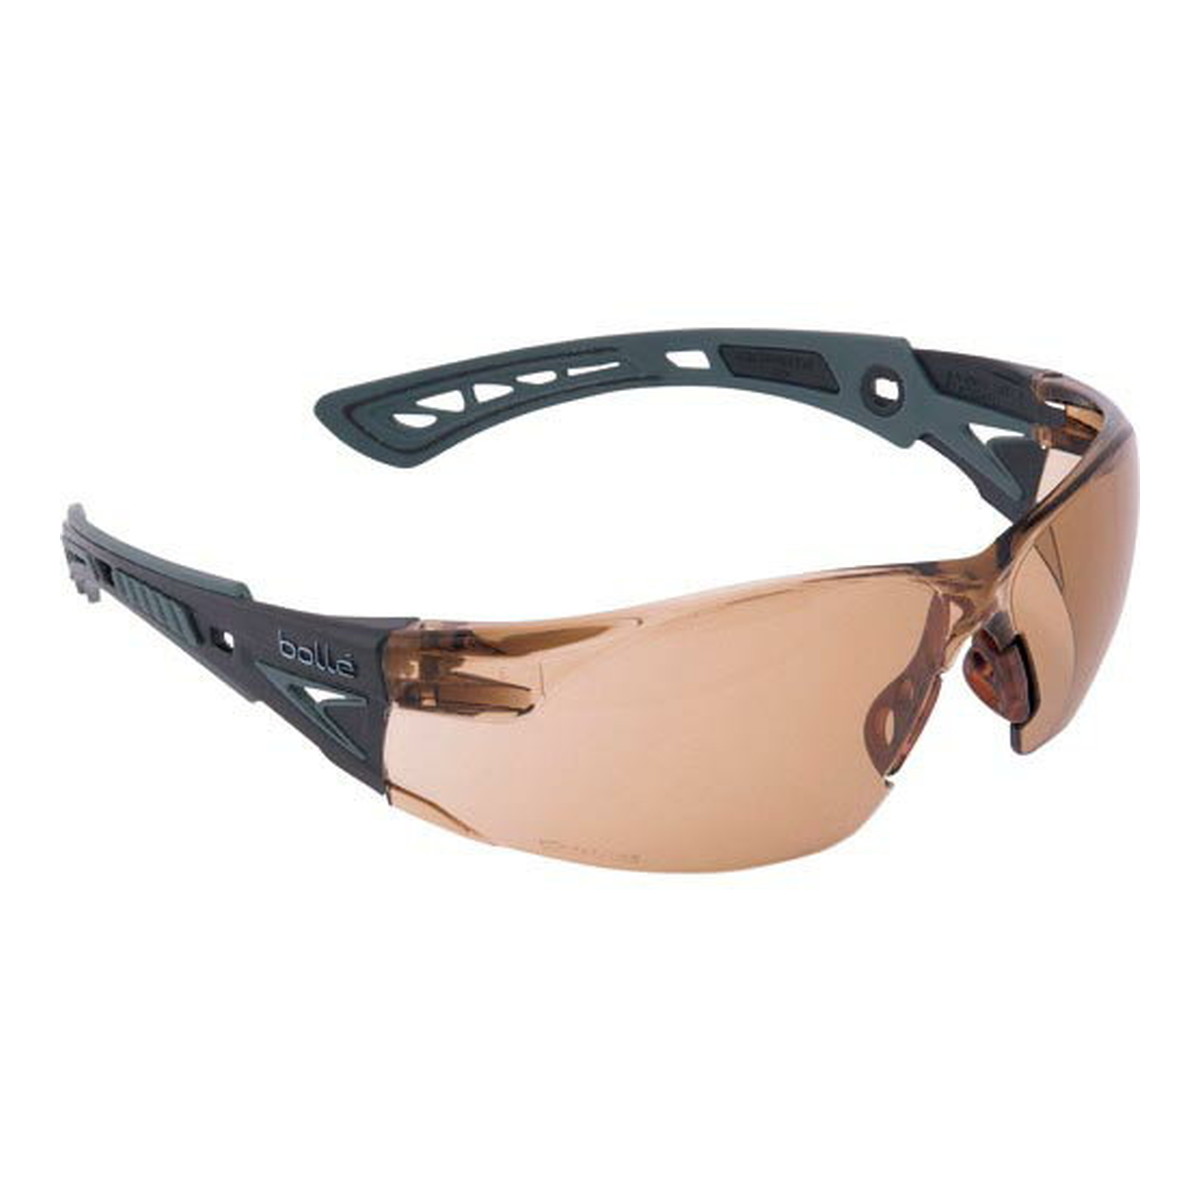 ボレー社 bolle 二眼型保護メガネ フィットタイプ ラッシュプラス ブラック×グレー トワイライト